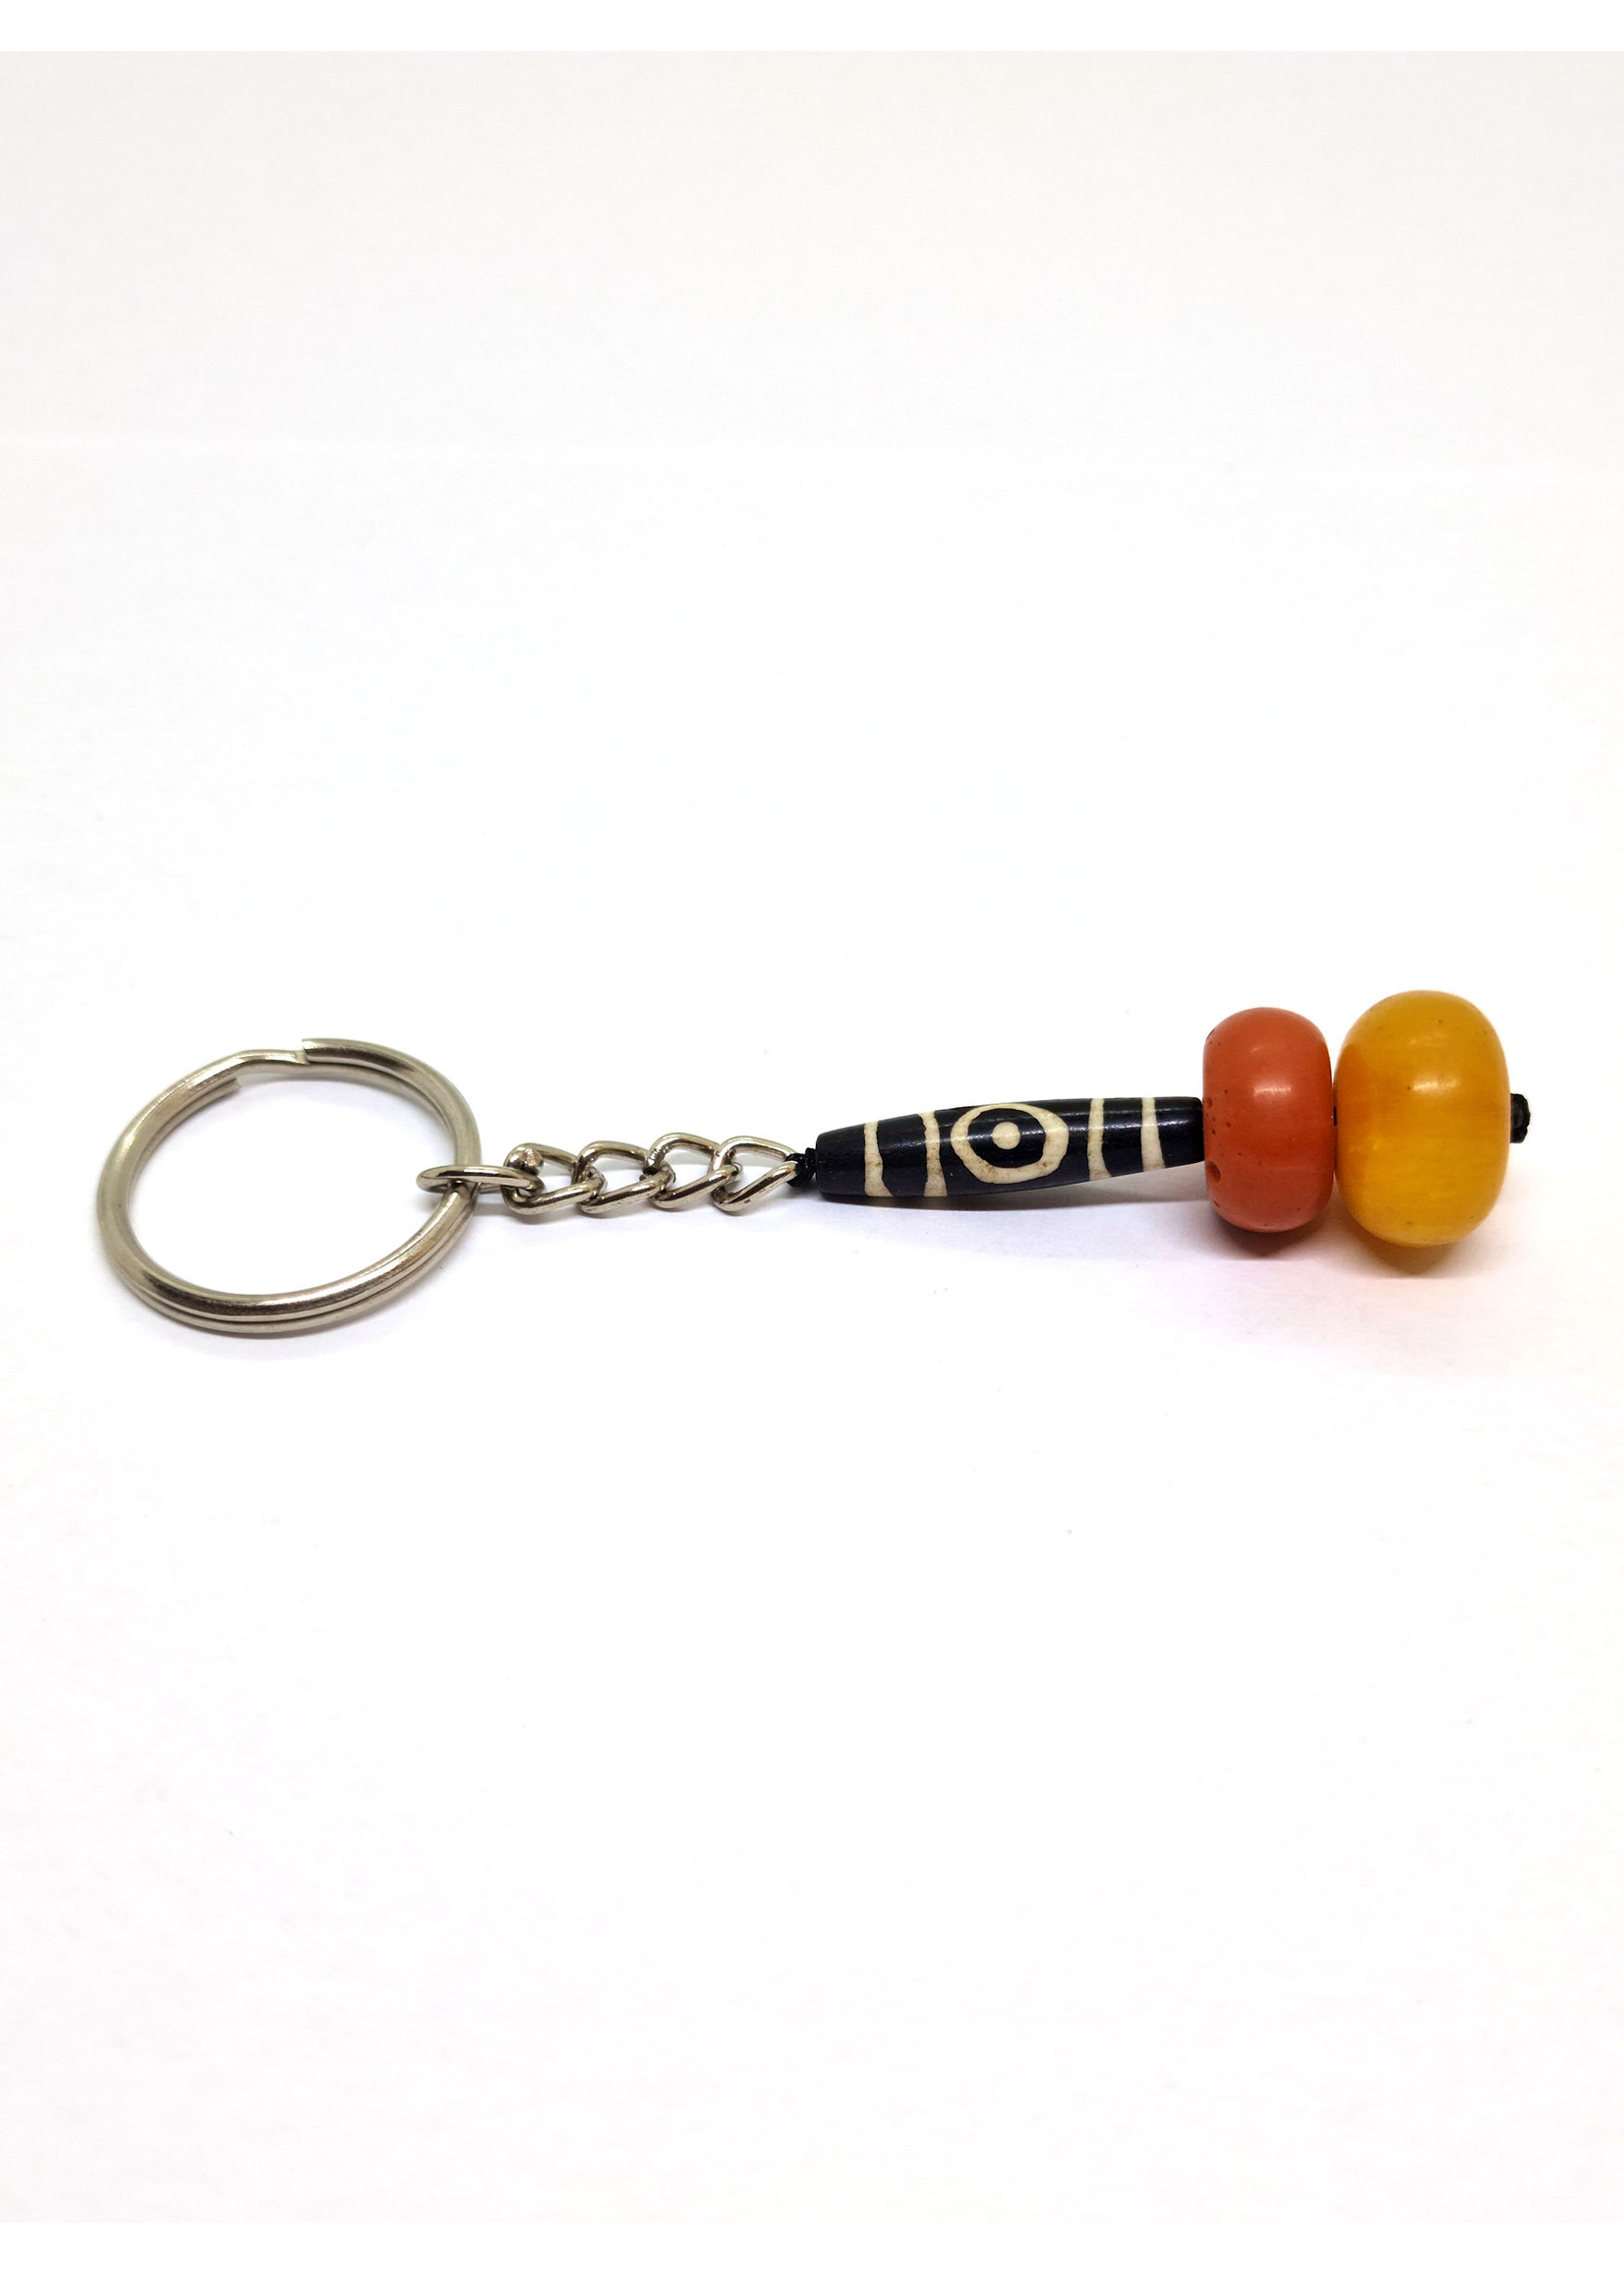 Tibetan Keychain Dzi and Beads